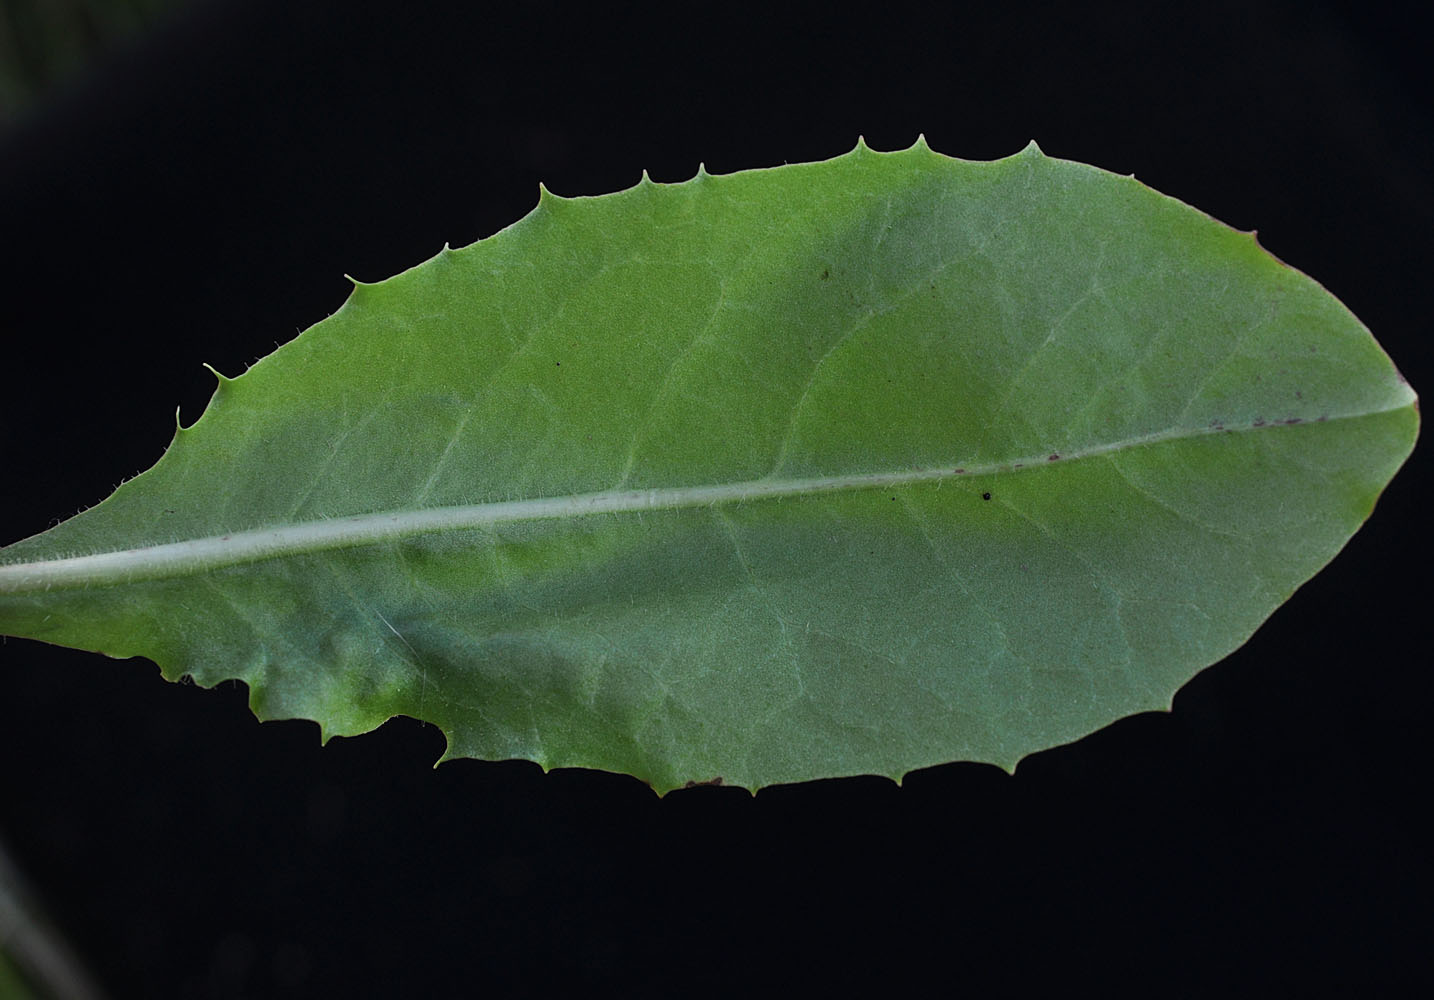 Flora of Eastern Washington Image: Crepis runcinata